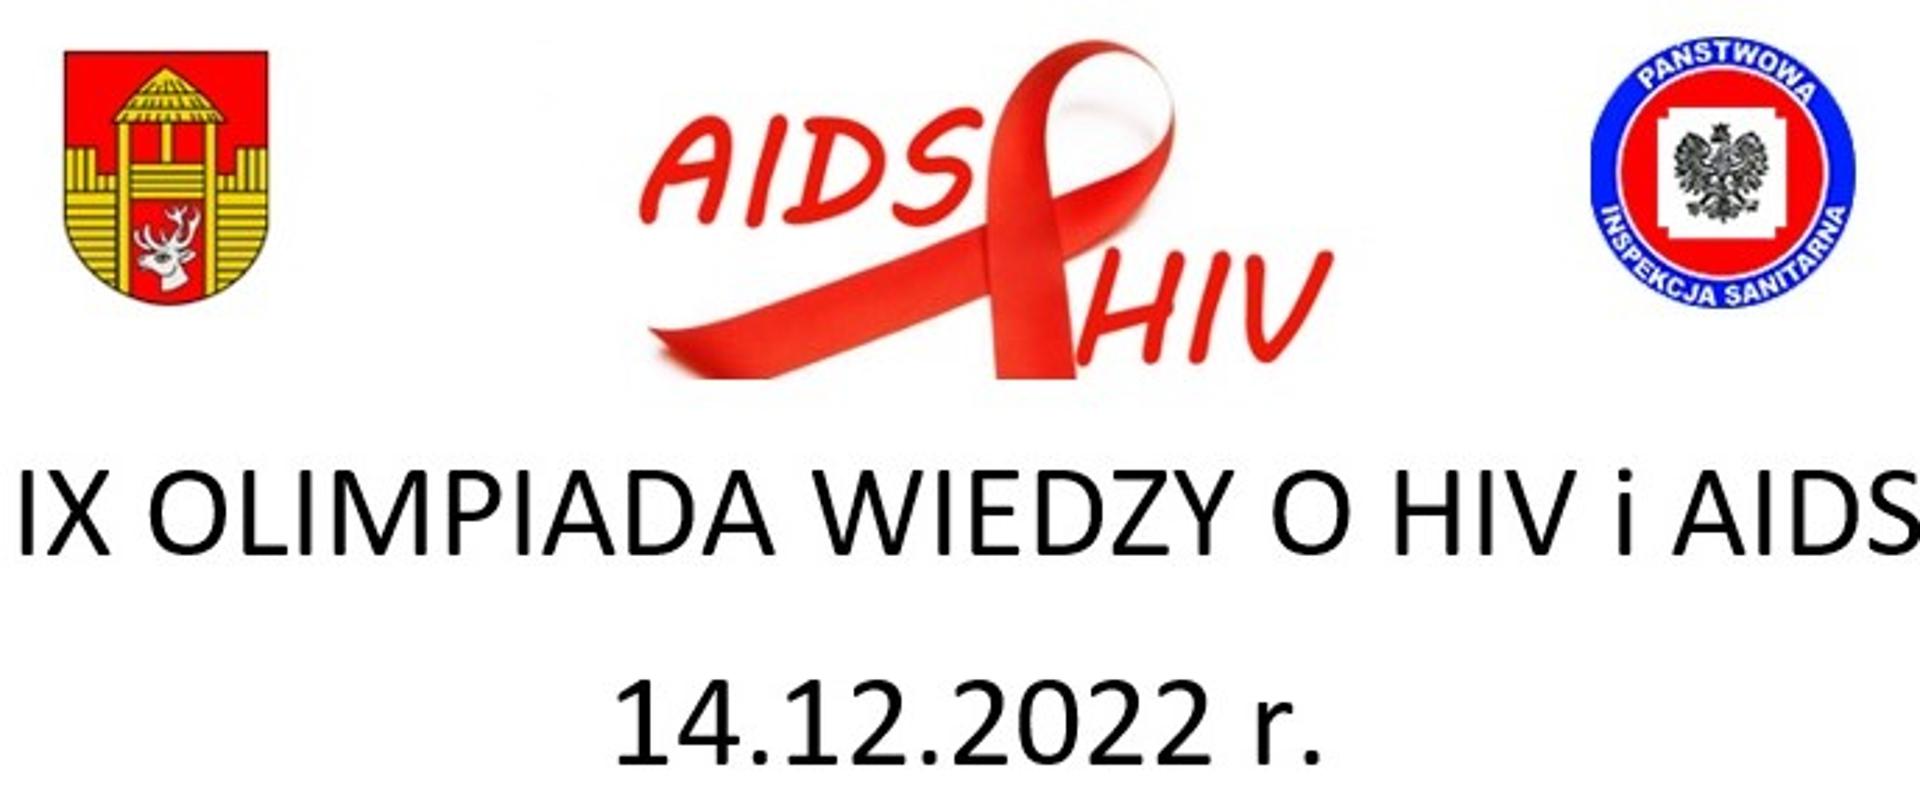 IX olimpiada wiedzy o HIV i AIDS